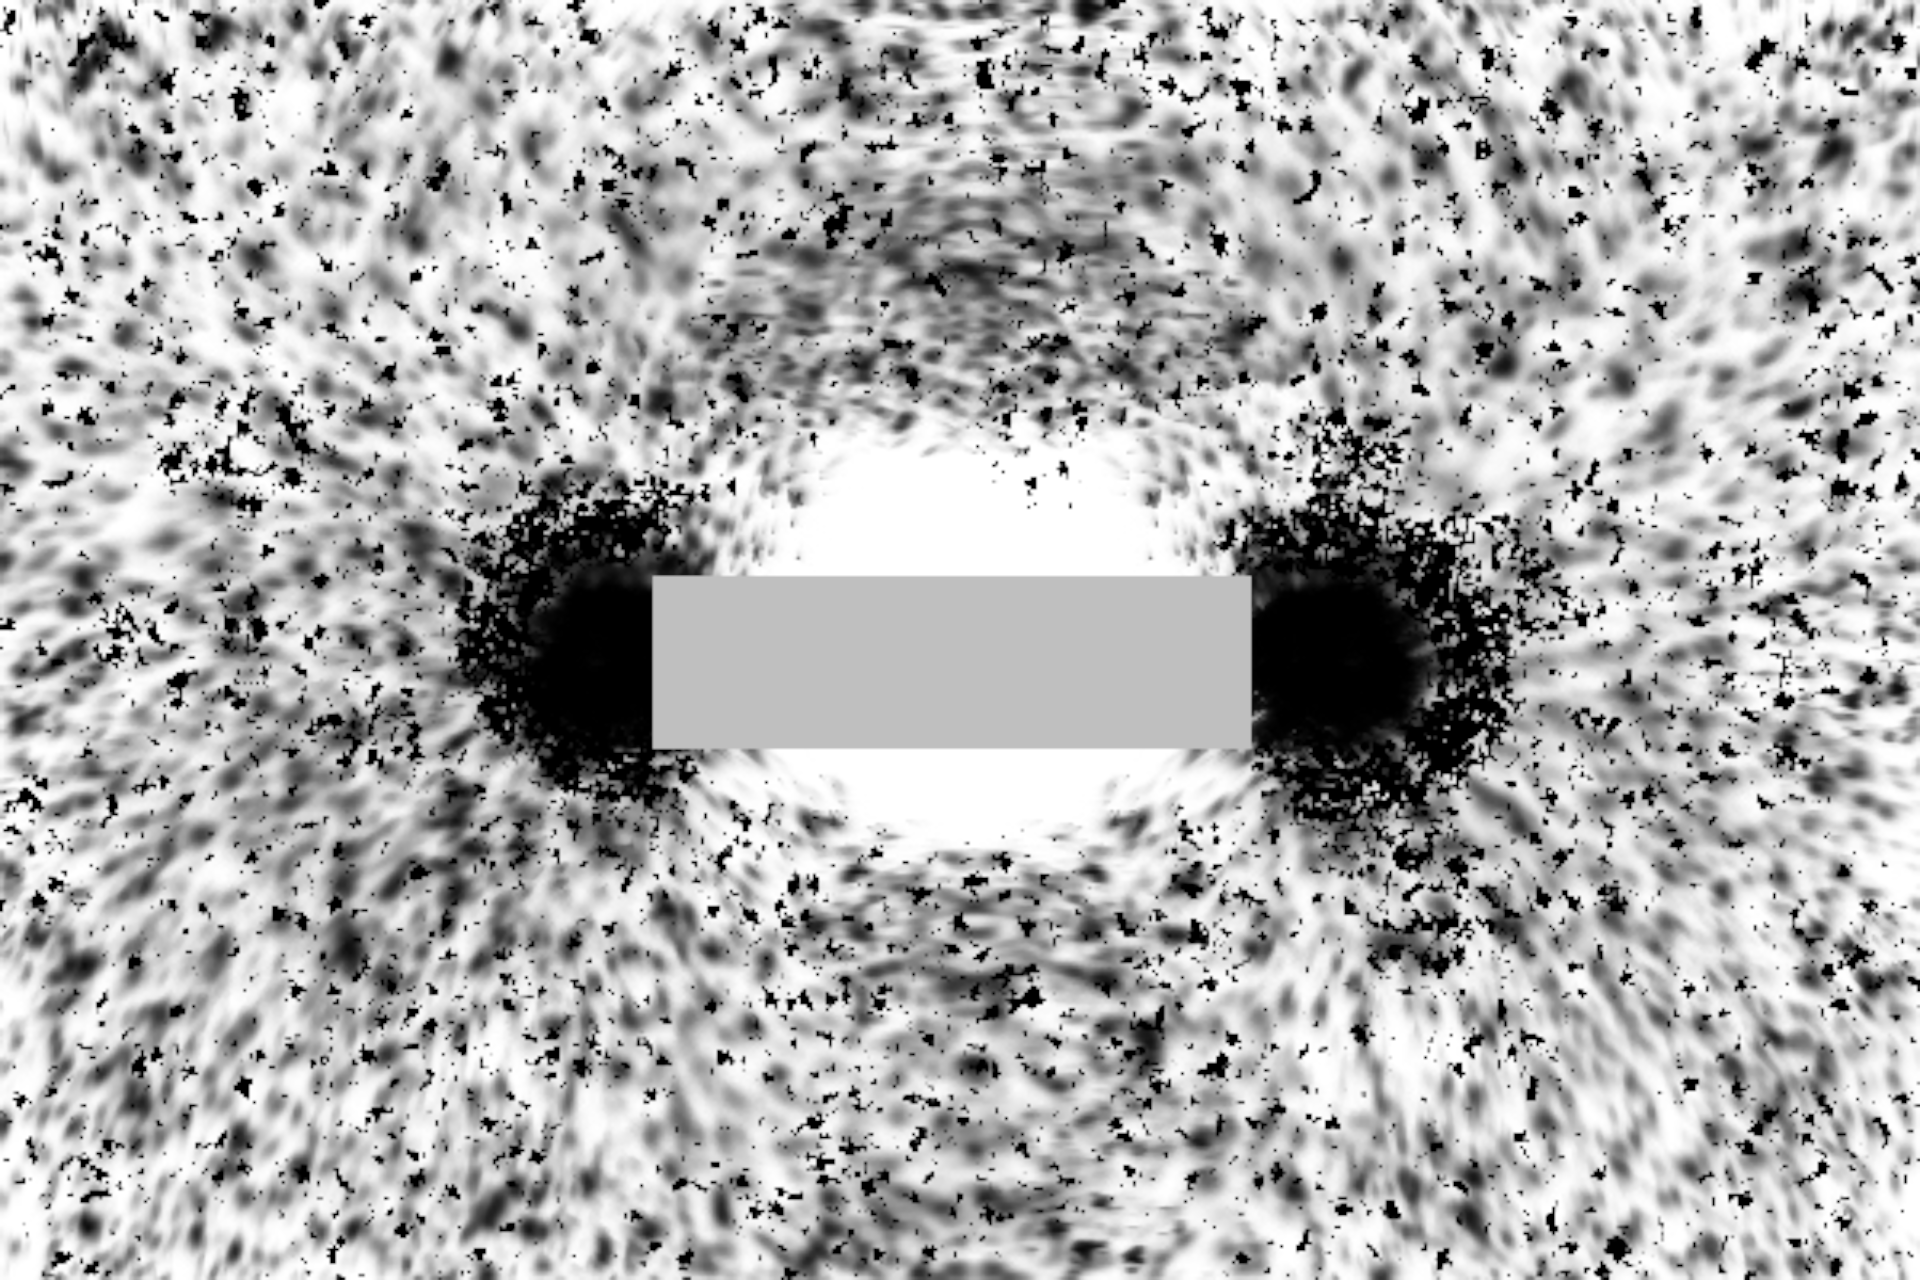 Rys. a. Ilustracja przedstawia negatyw zdjęcia, na którym zaprezentowano sposób układania się opiłków żelaza zanurzonych w cieczy wokół magnesu sztabkowego. W centralnej części ilustracji widoczny jest magnes sztabkowy w postaci szarego poziomego prostokąta. Opiłki żelaza widoczne w postaci ciemnych drobinek układają się wokół magnesu, tworząc linie odpowiadające liniom pola magnetycznego. Biegną one pomiędzy pionowymi krawędziami magnesu tworząc owalne krzywe zamknięte. Krzywe te biegną dookoła dłuższych, poziomych krawędzi magnesu sztabkowego. Największa koncentracja opiłków żelaza obserwowana jest w pobliżu prawej i lewej krawędzi magnesu.